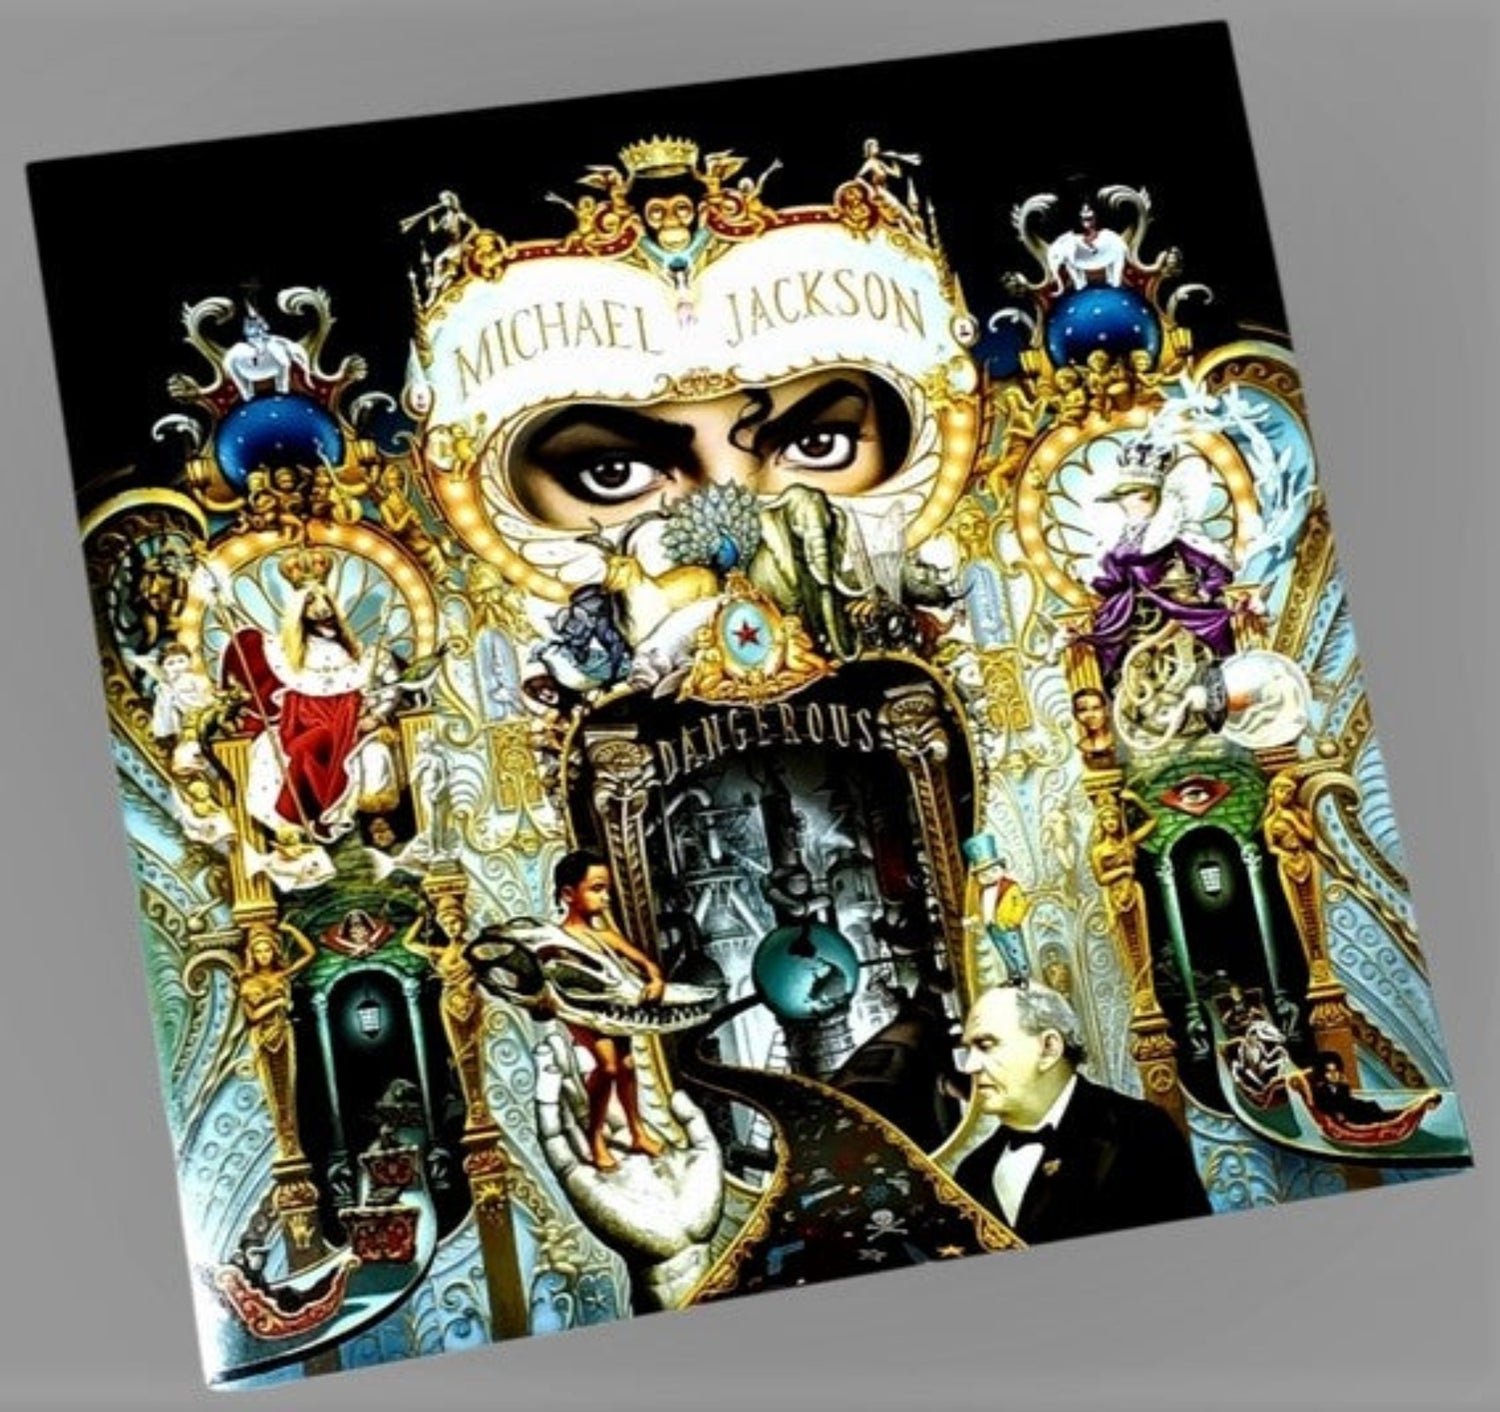 Michael Jackson: Dangerous Album Review